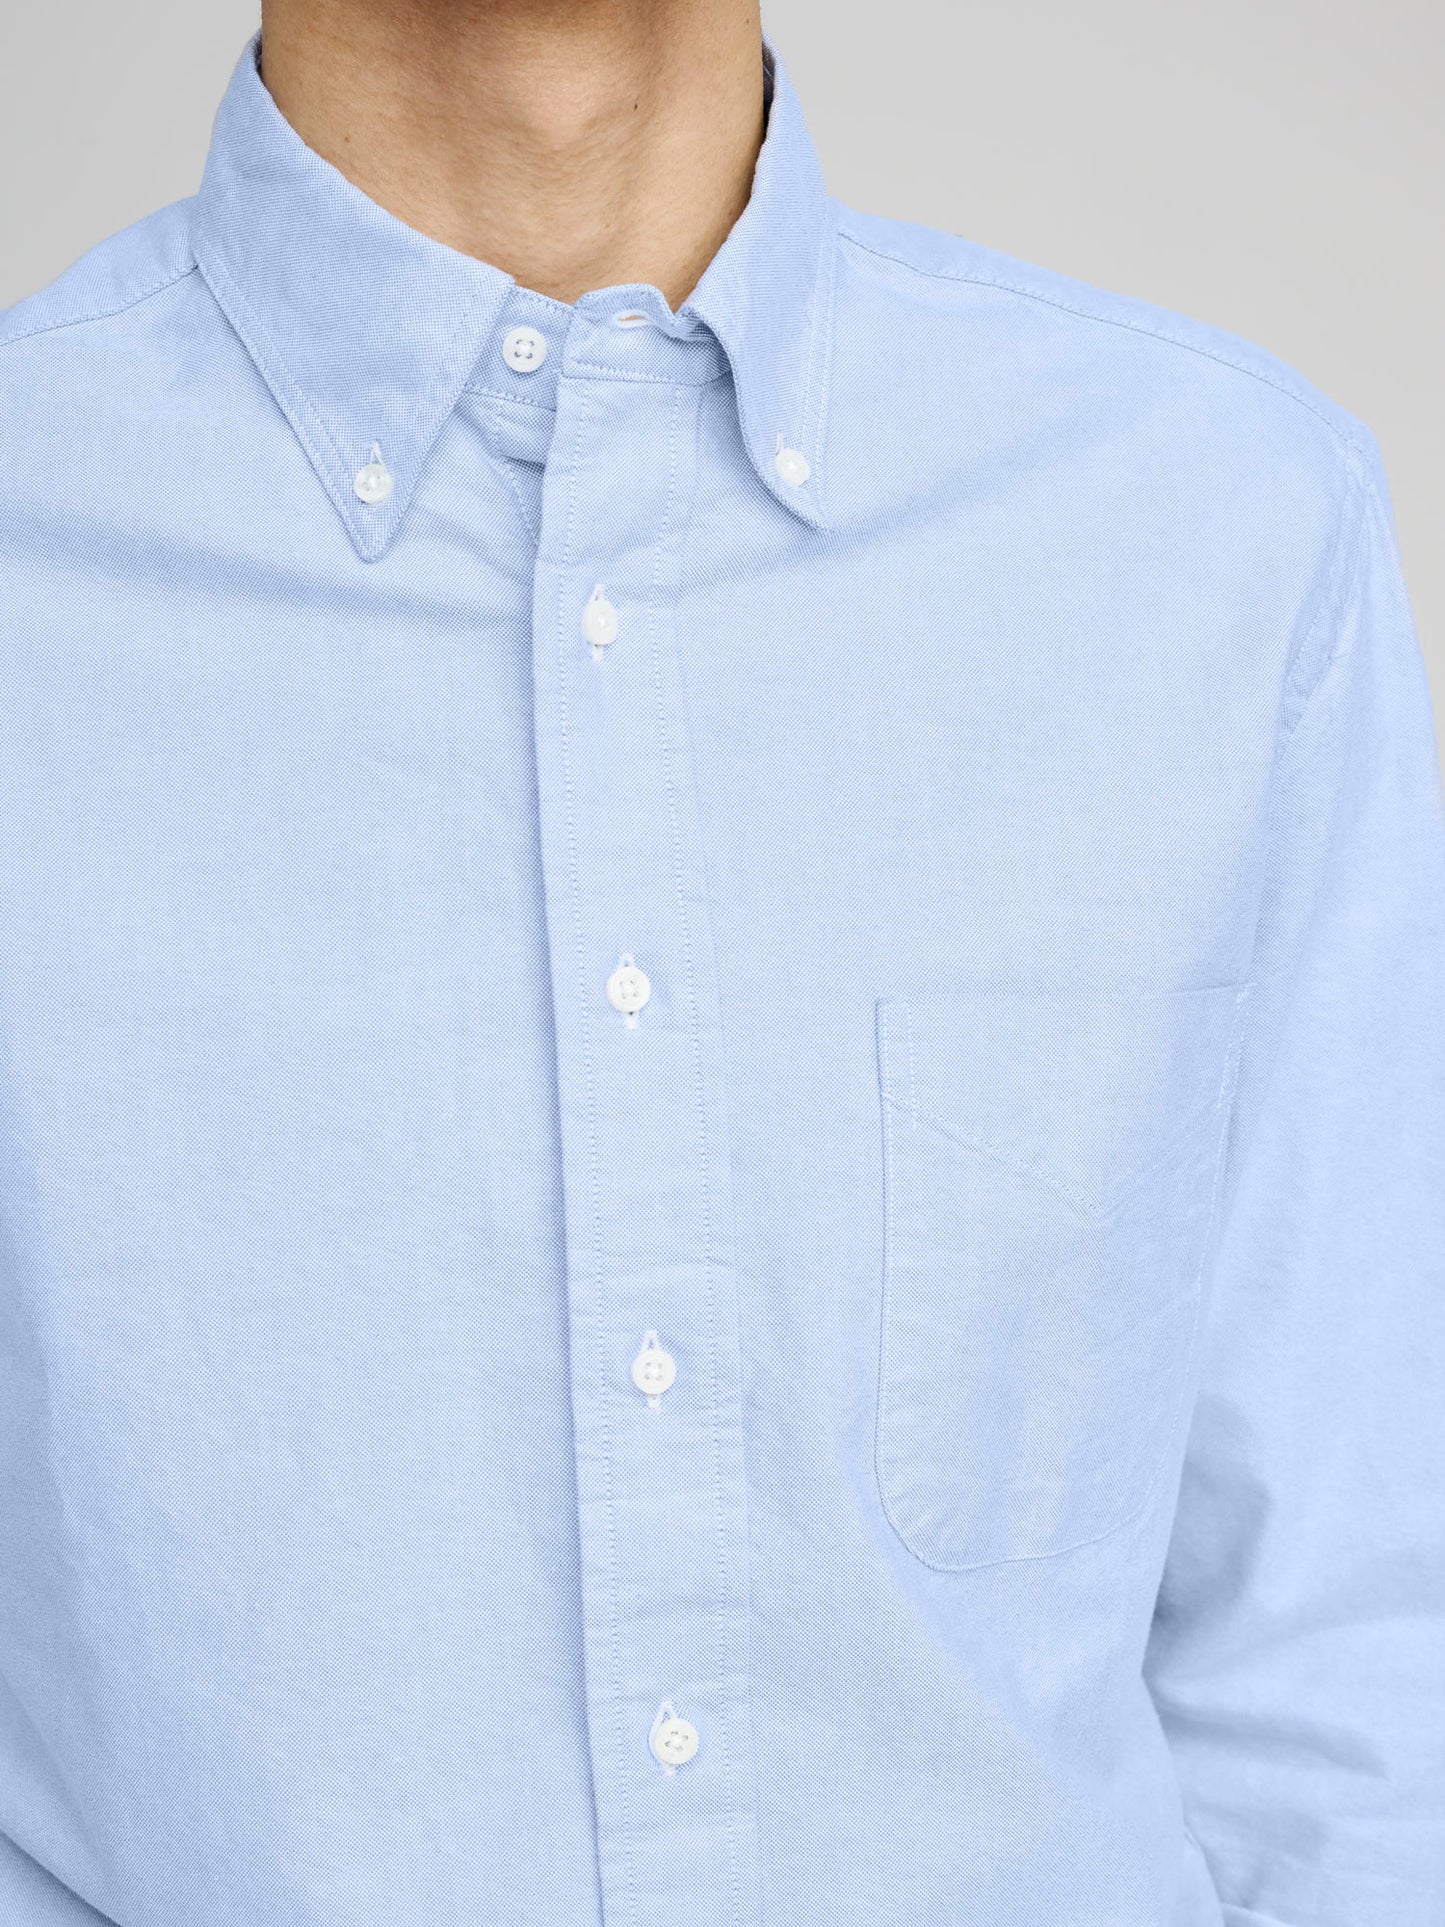 Oxford Shirt, Light Blue